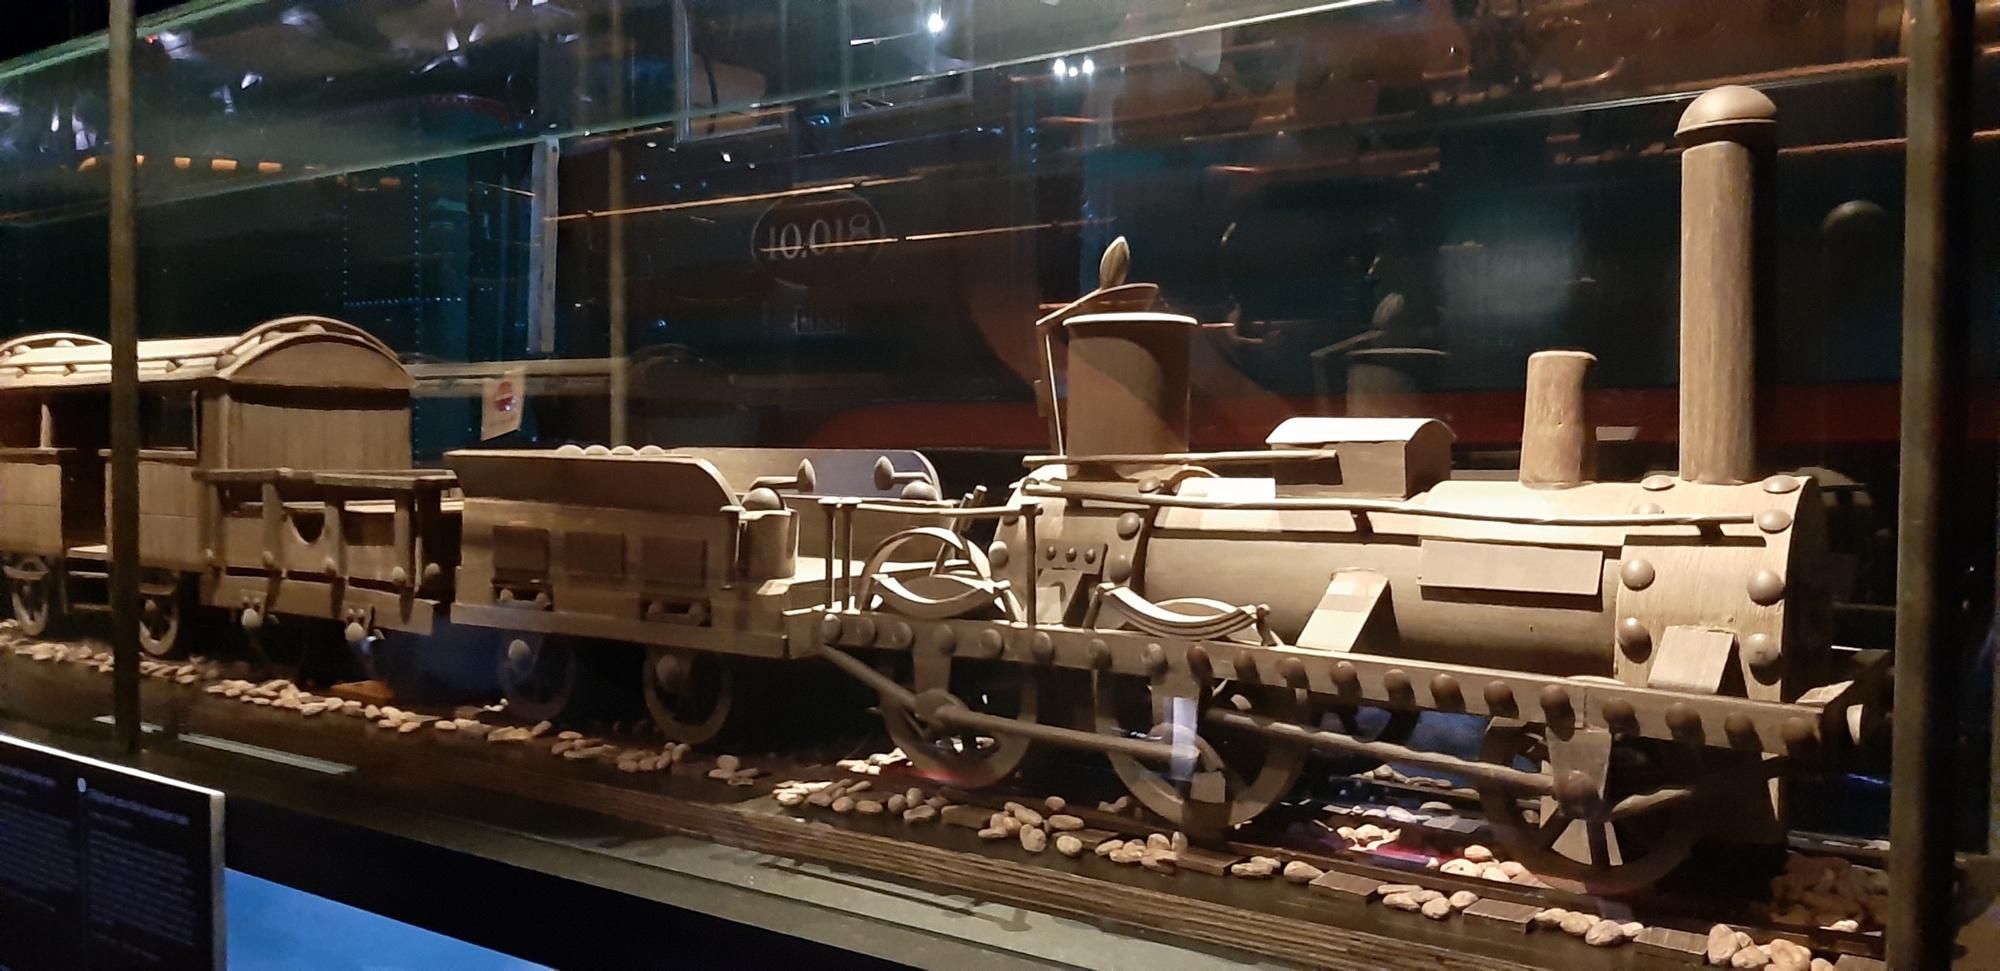 Des locomotives alléchantes au musée Train World